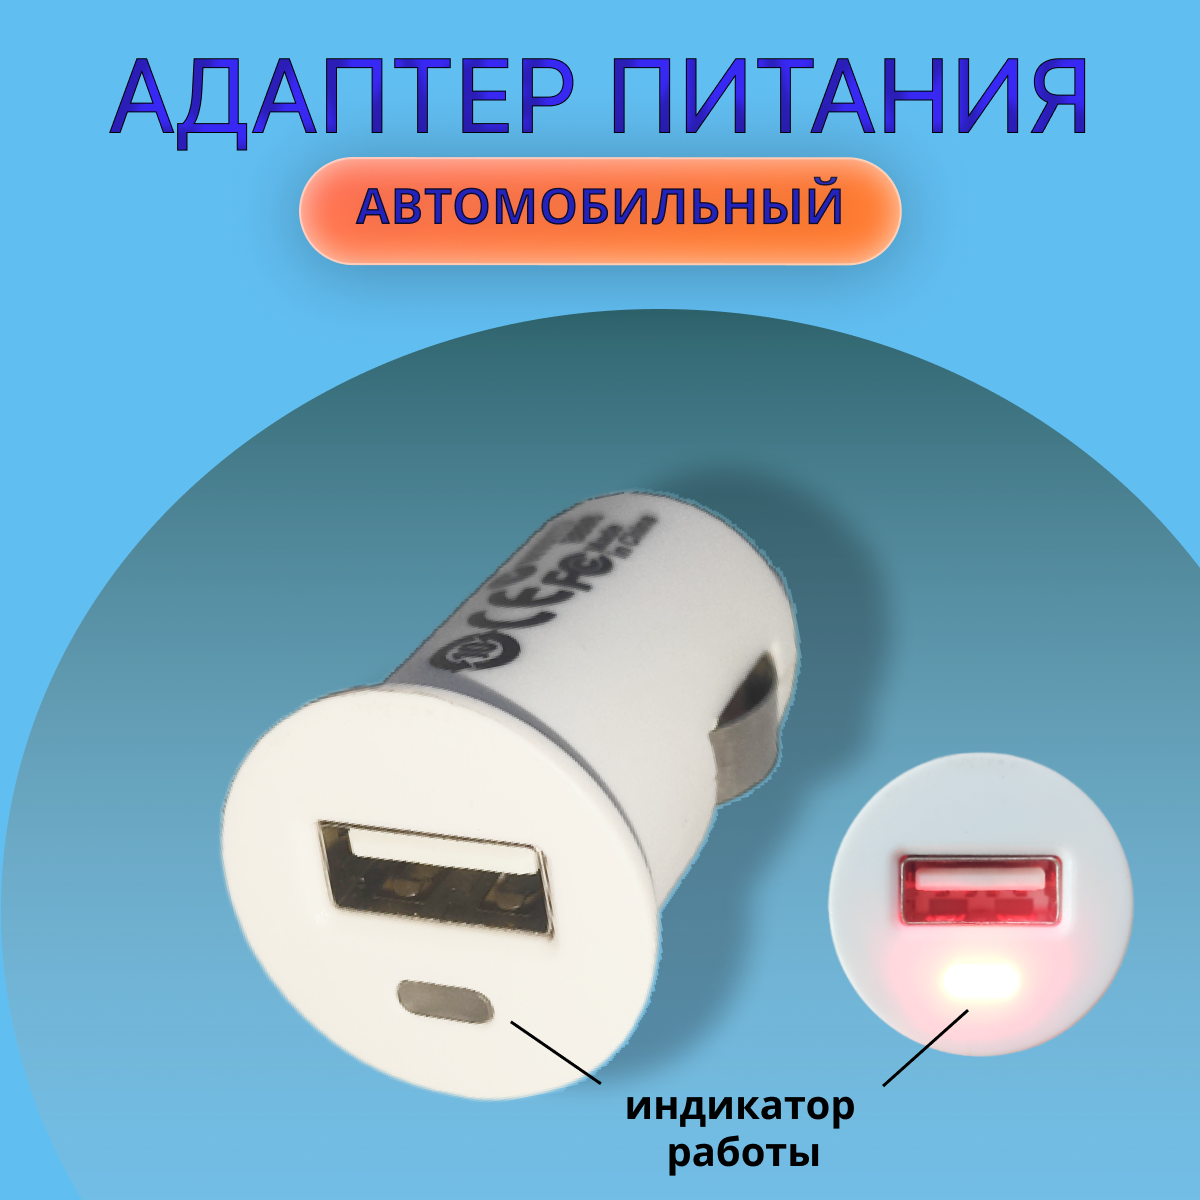 Разветвитель прикуривателя на 1 USB-разъем (адаптер) / автомобильное зарядное устройство / АЗУ (переходник).